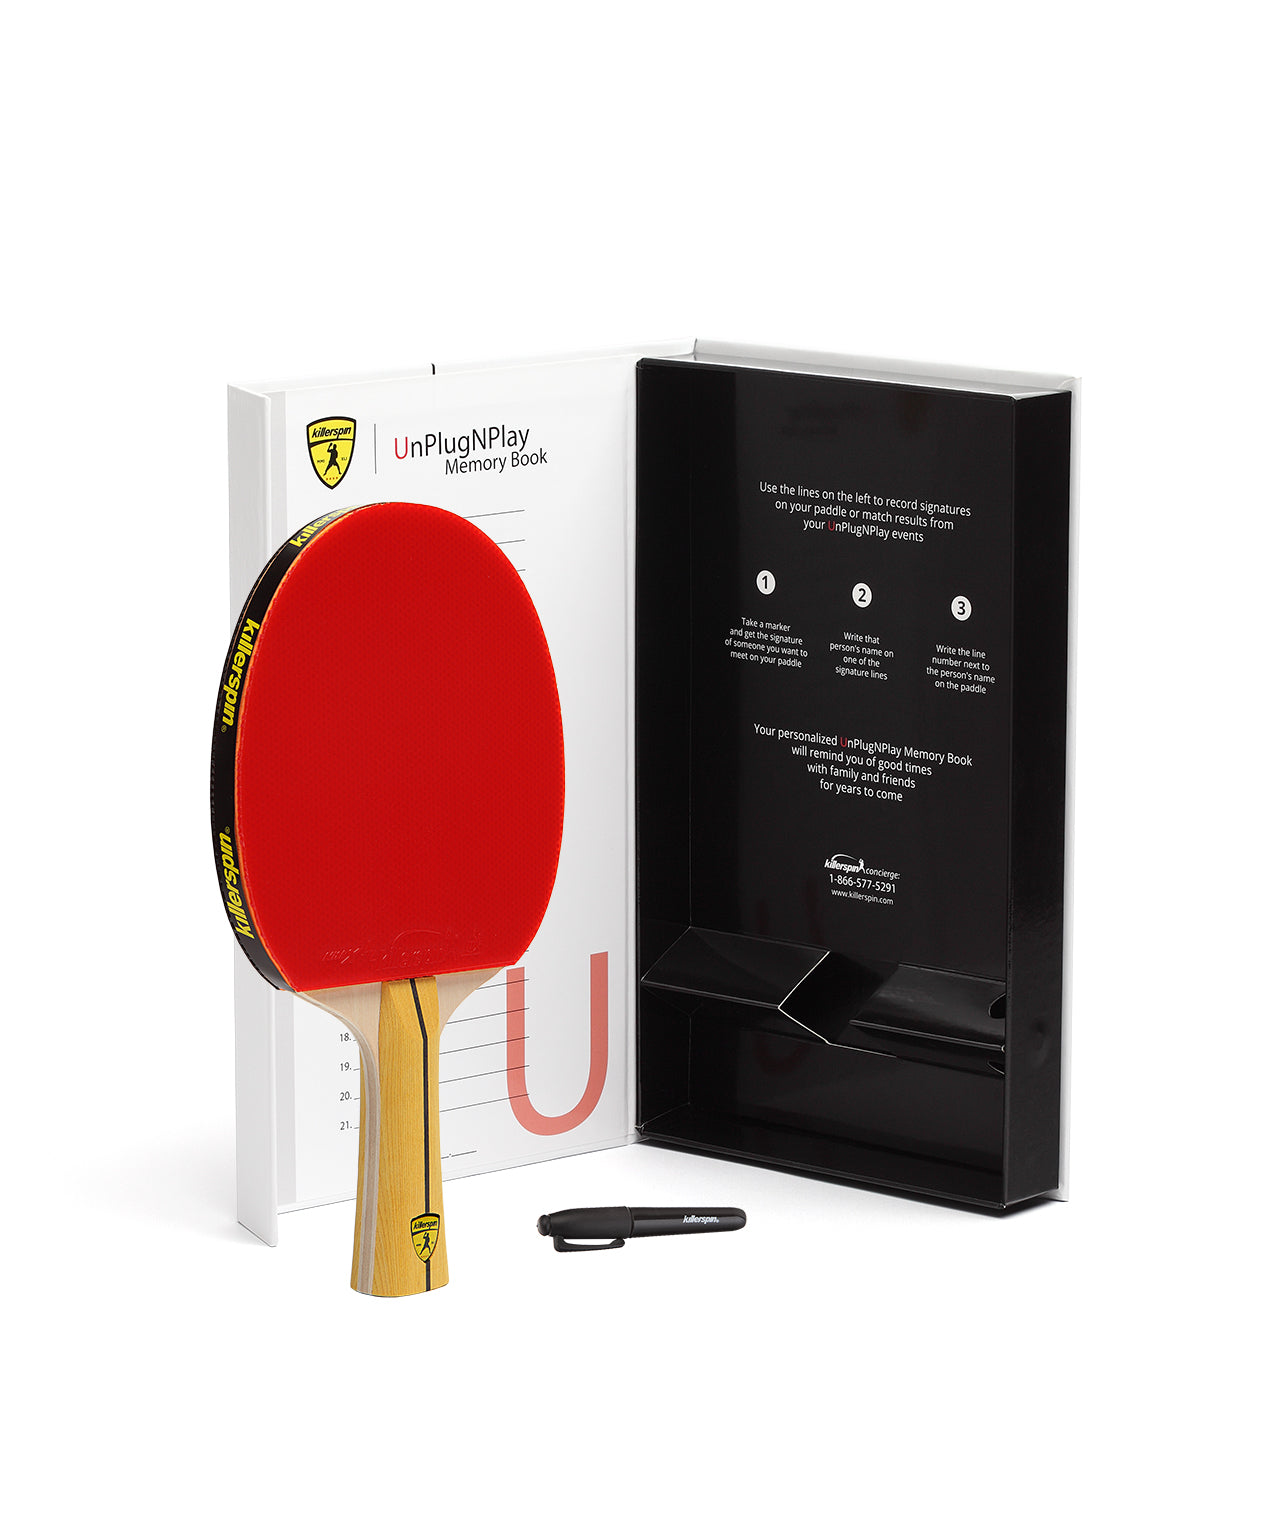 Killerspin Ping Pong Paddle Jet400 Smash N2 - Gift